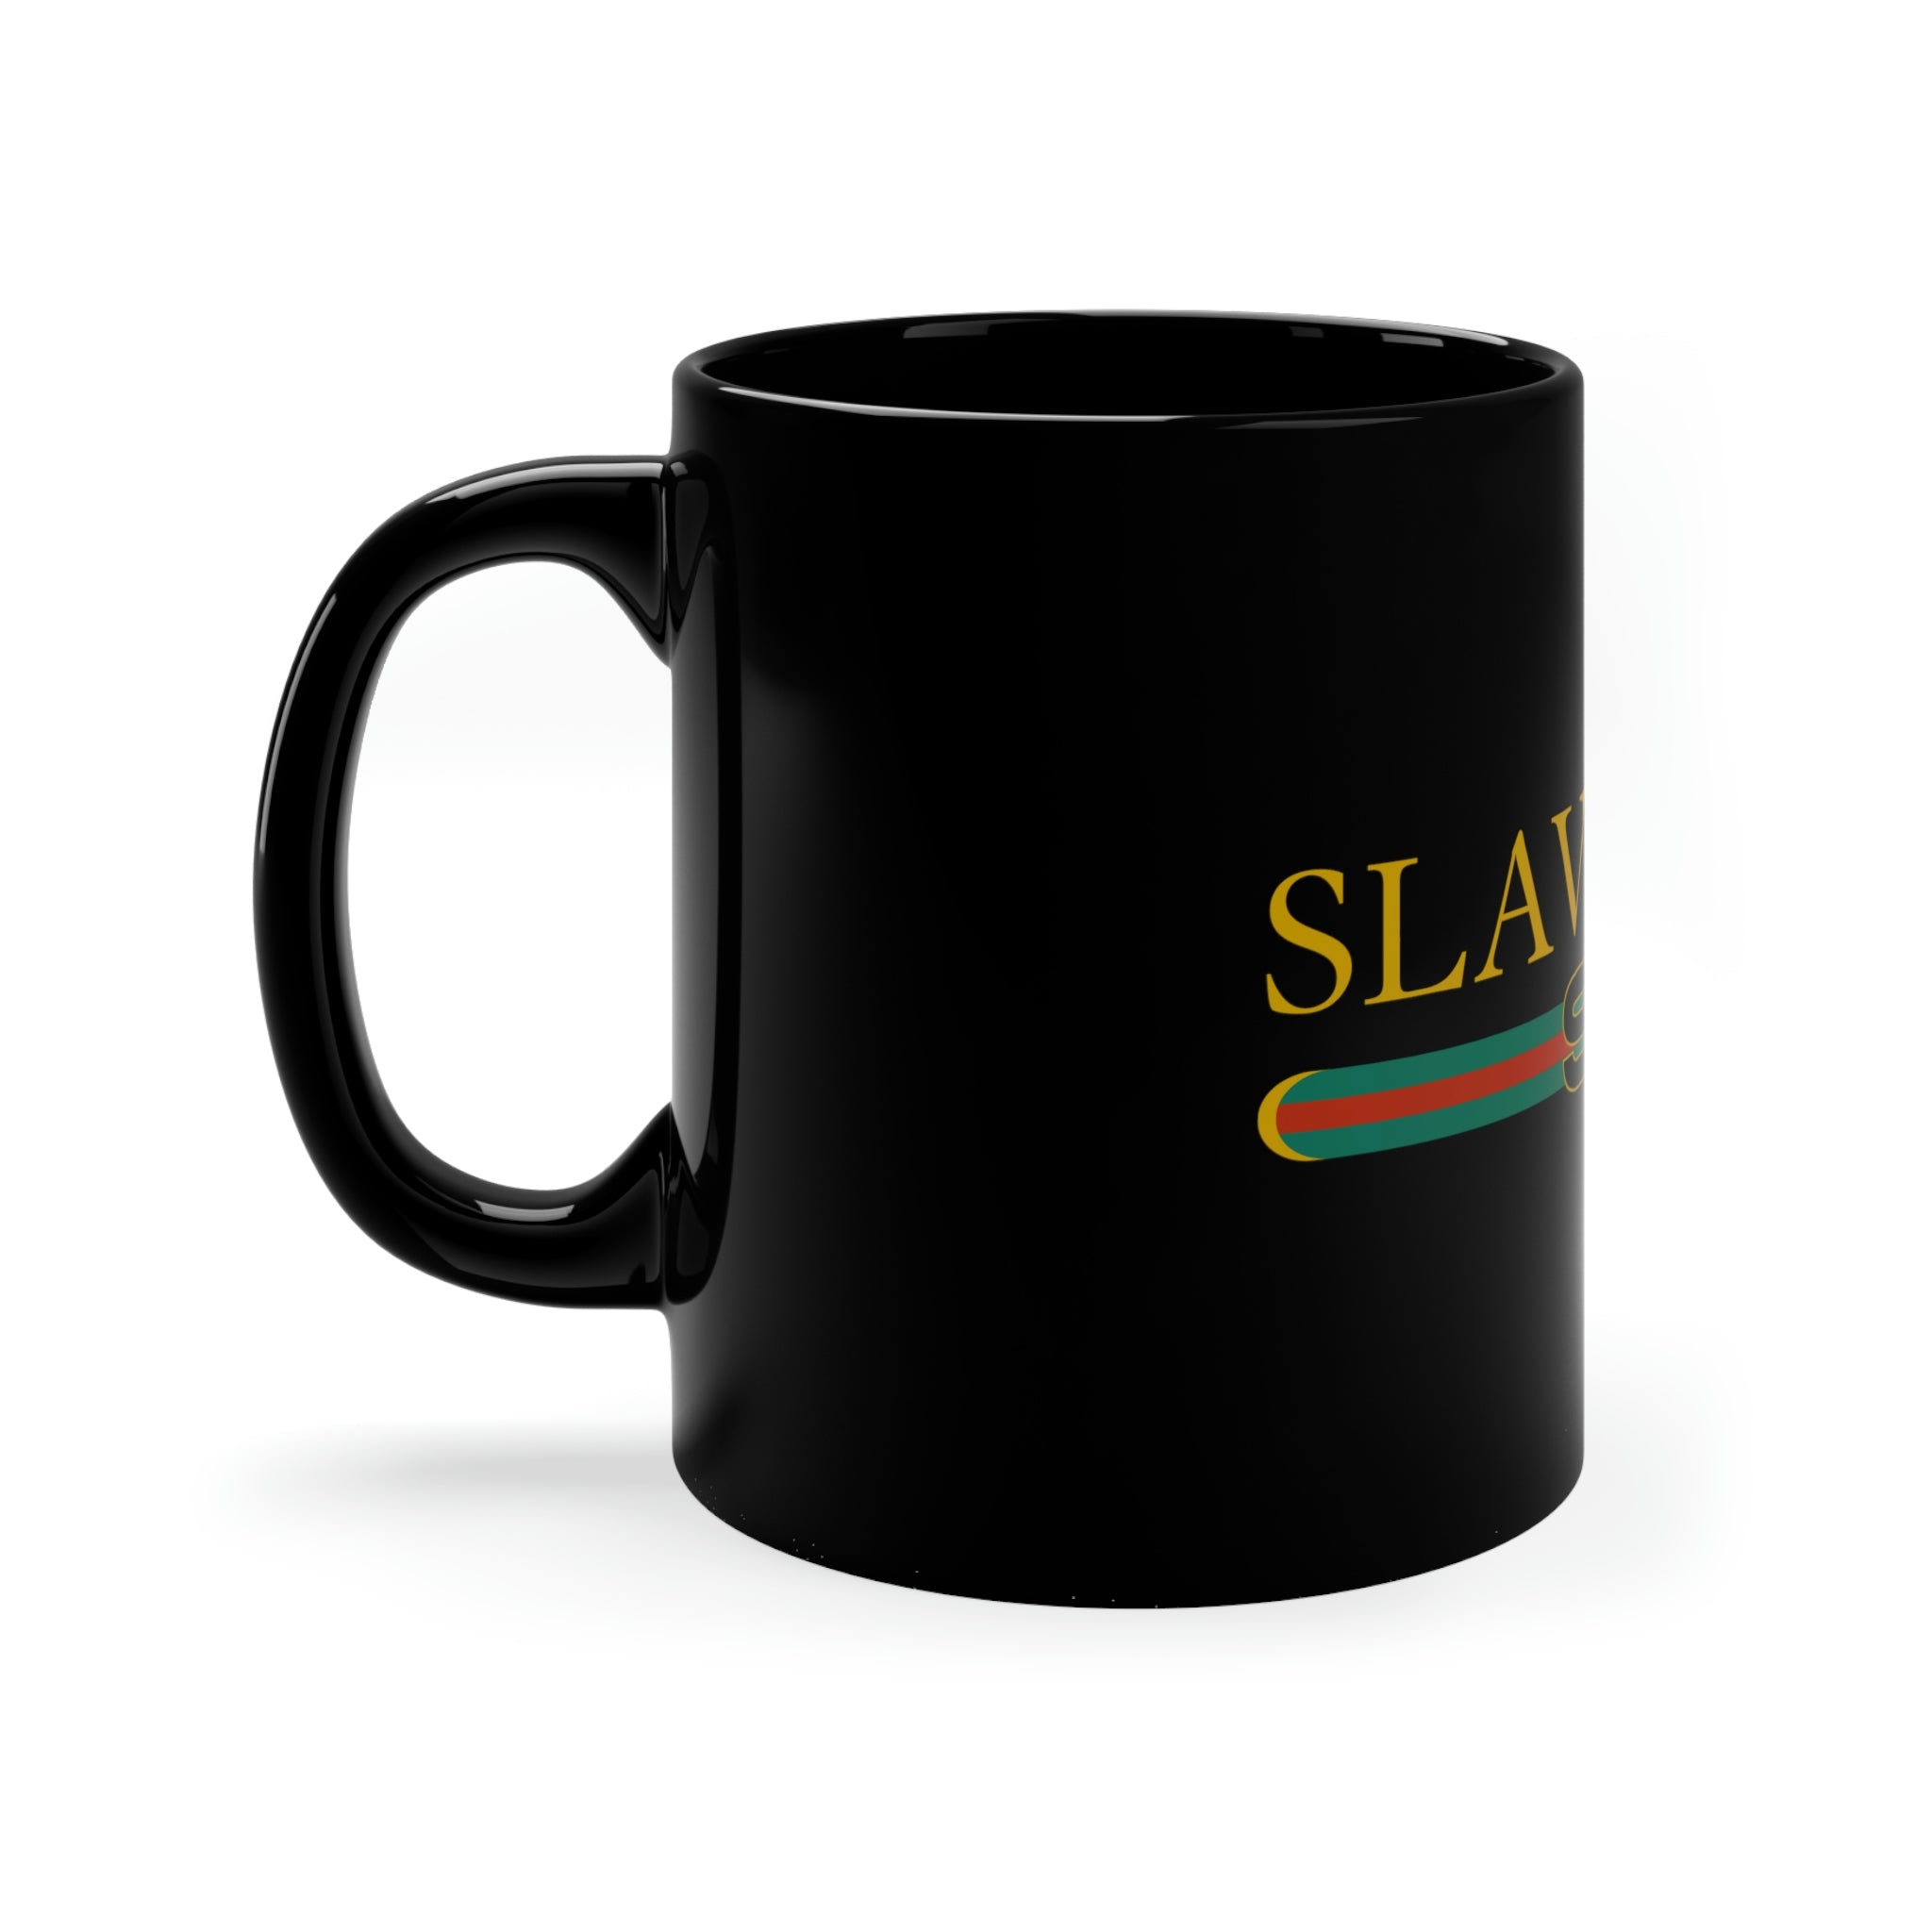 Slavucci Sensation Black Mug